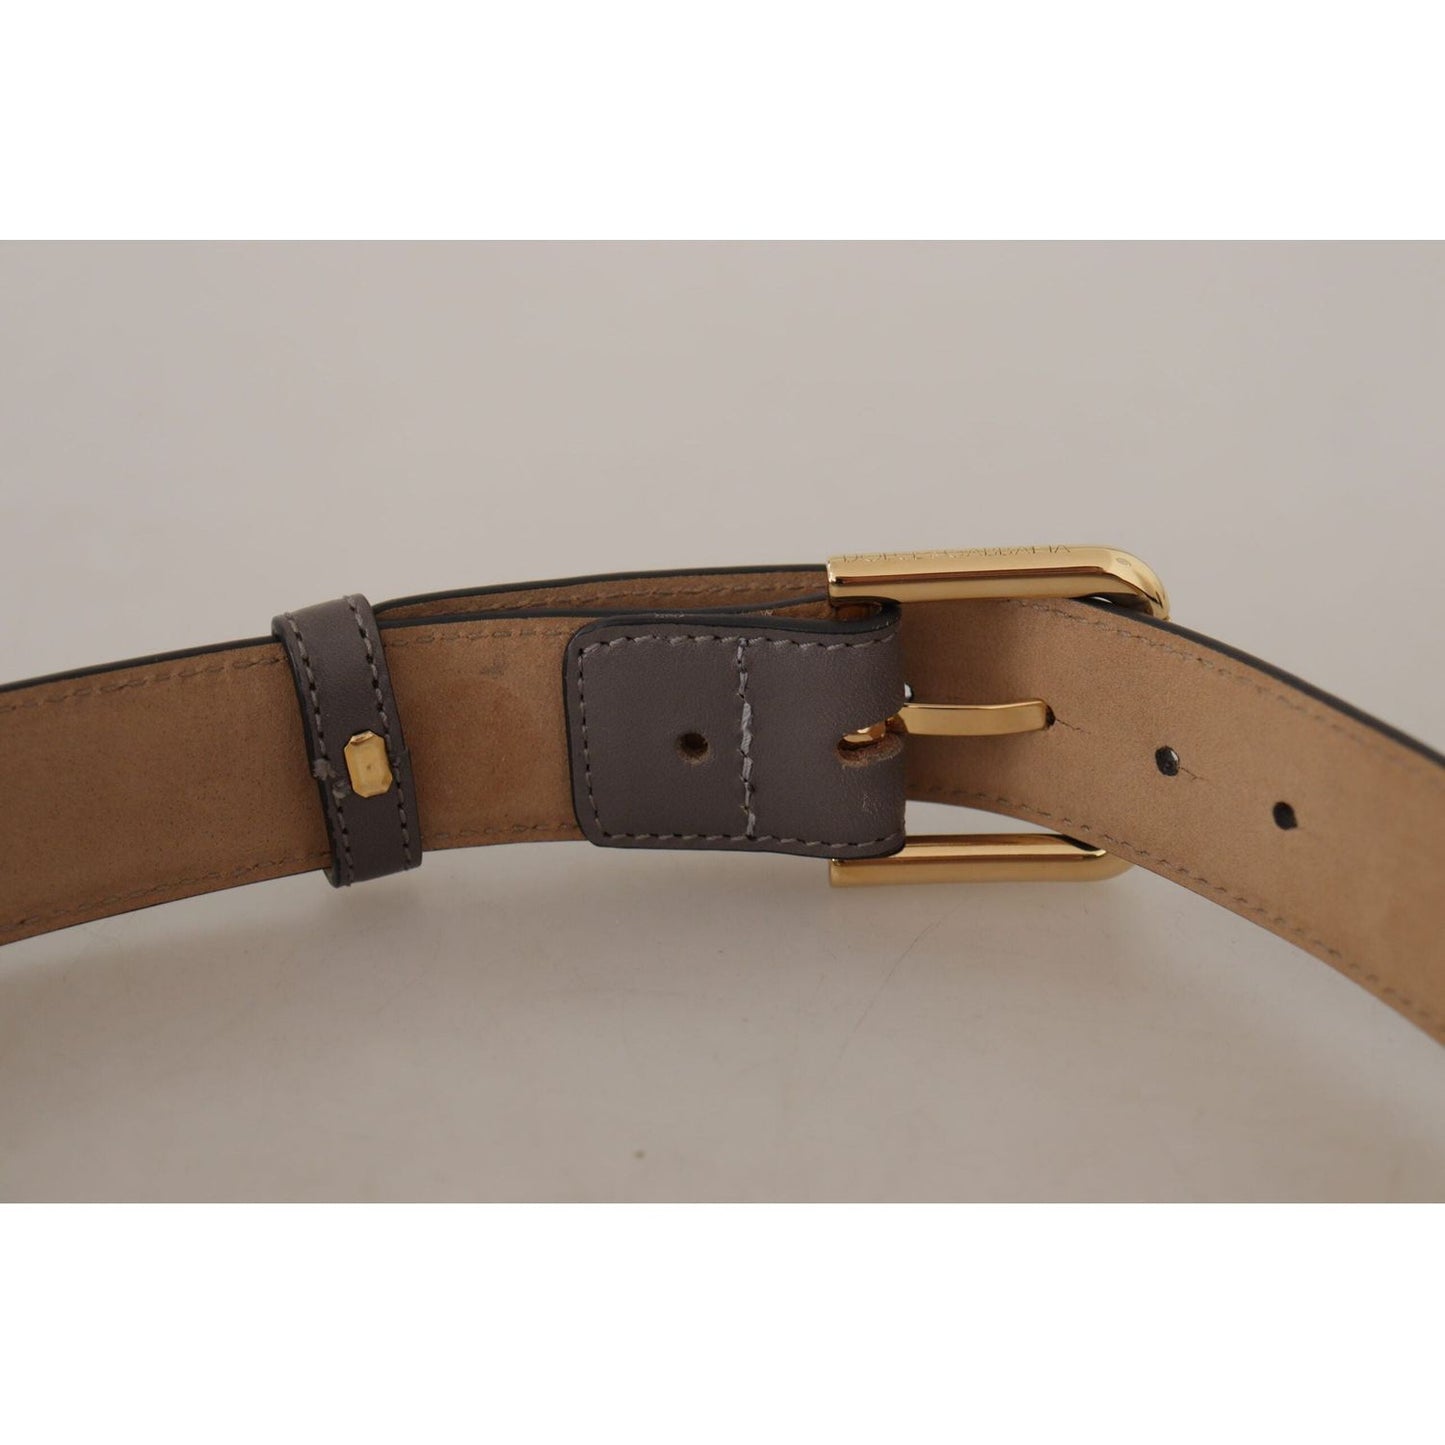 Dolce & Gabbana Elegant Engraved Buckle Leather Belt gray-calfskin-leather-gold-metal-logo-buckle-belt